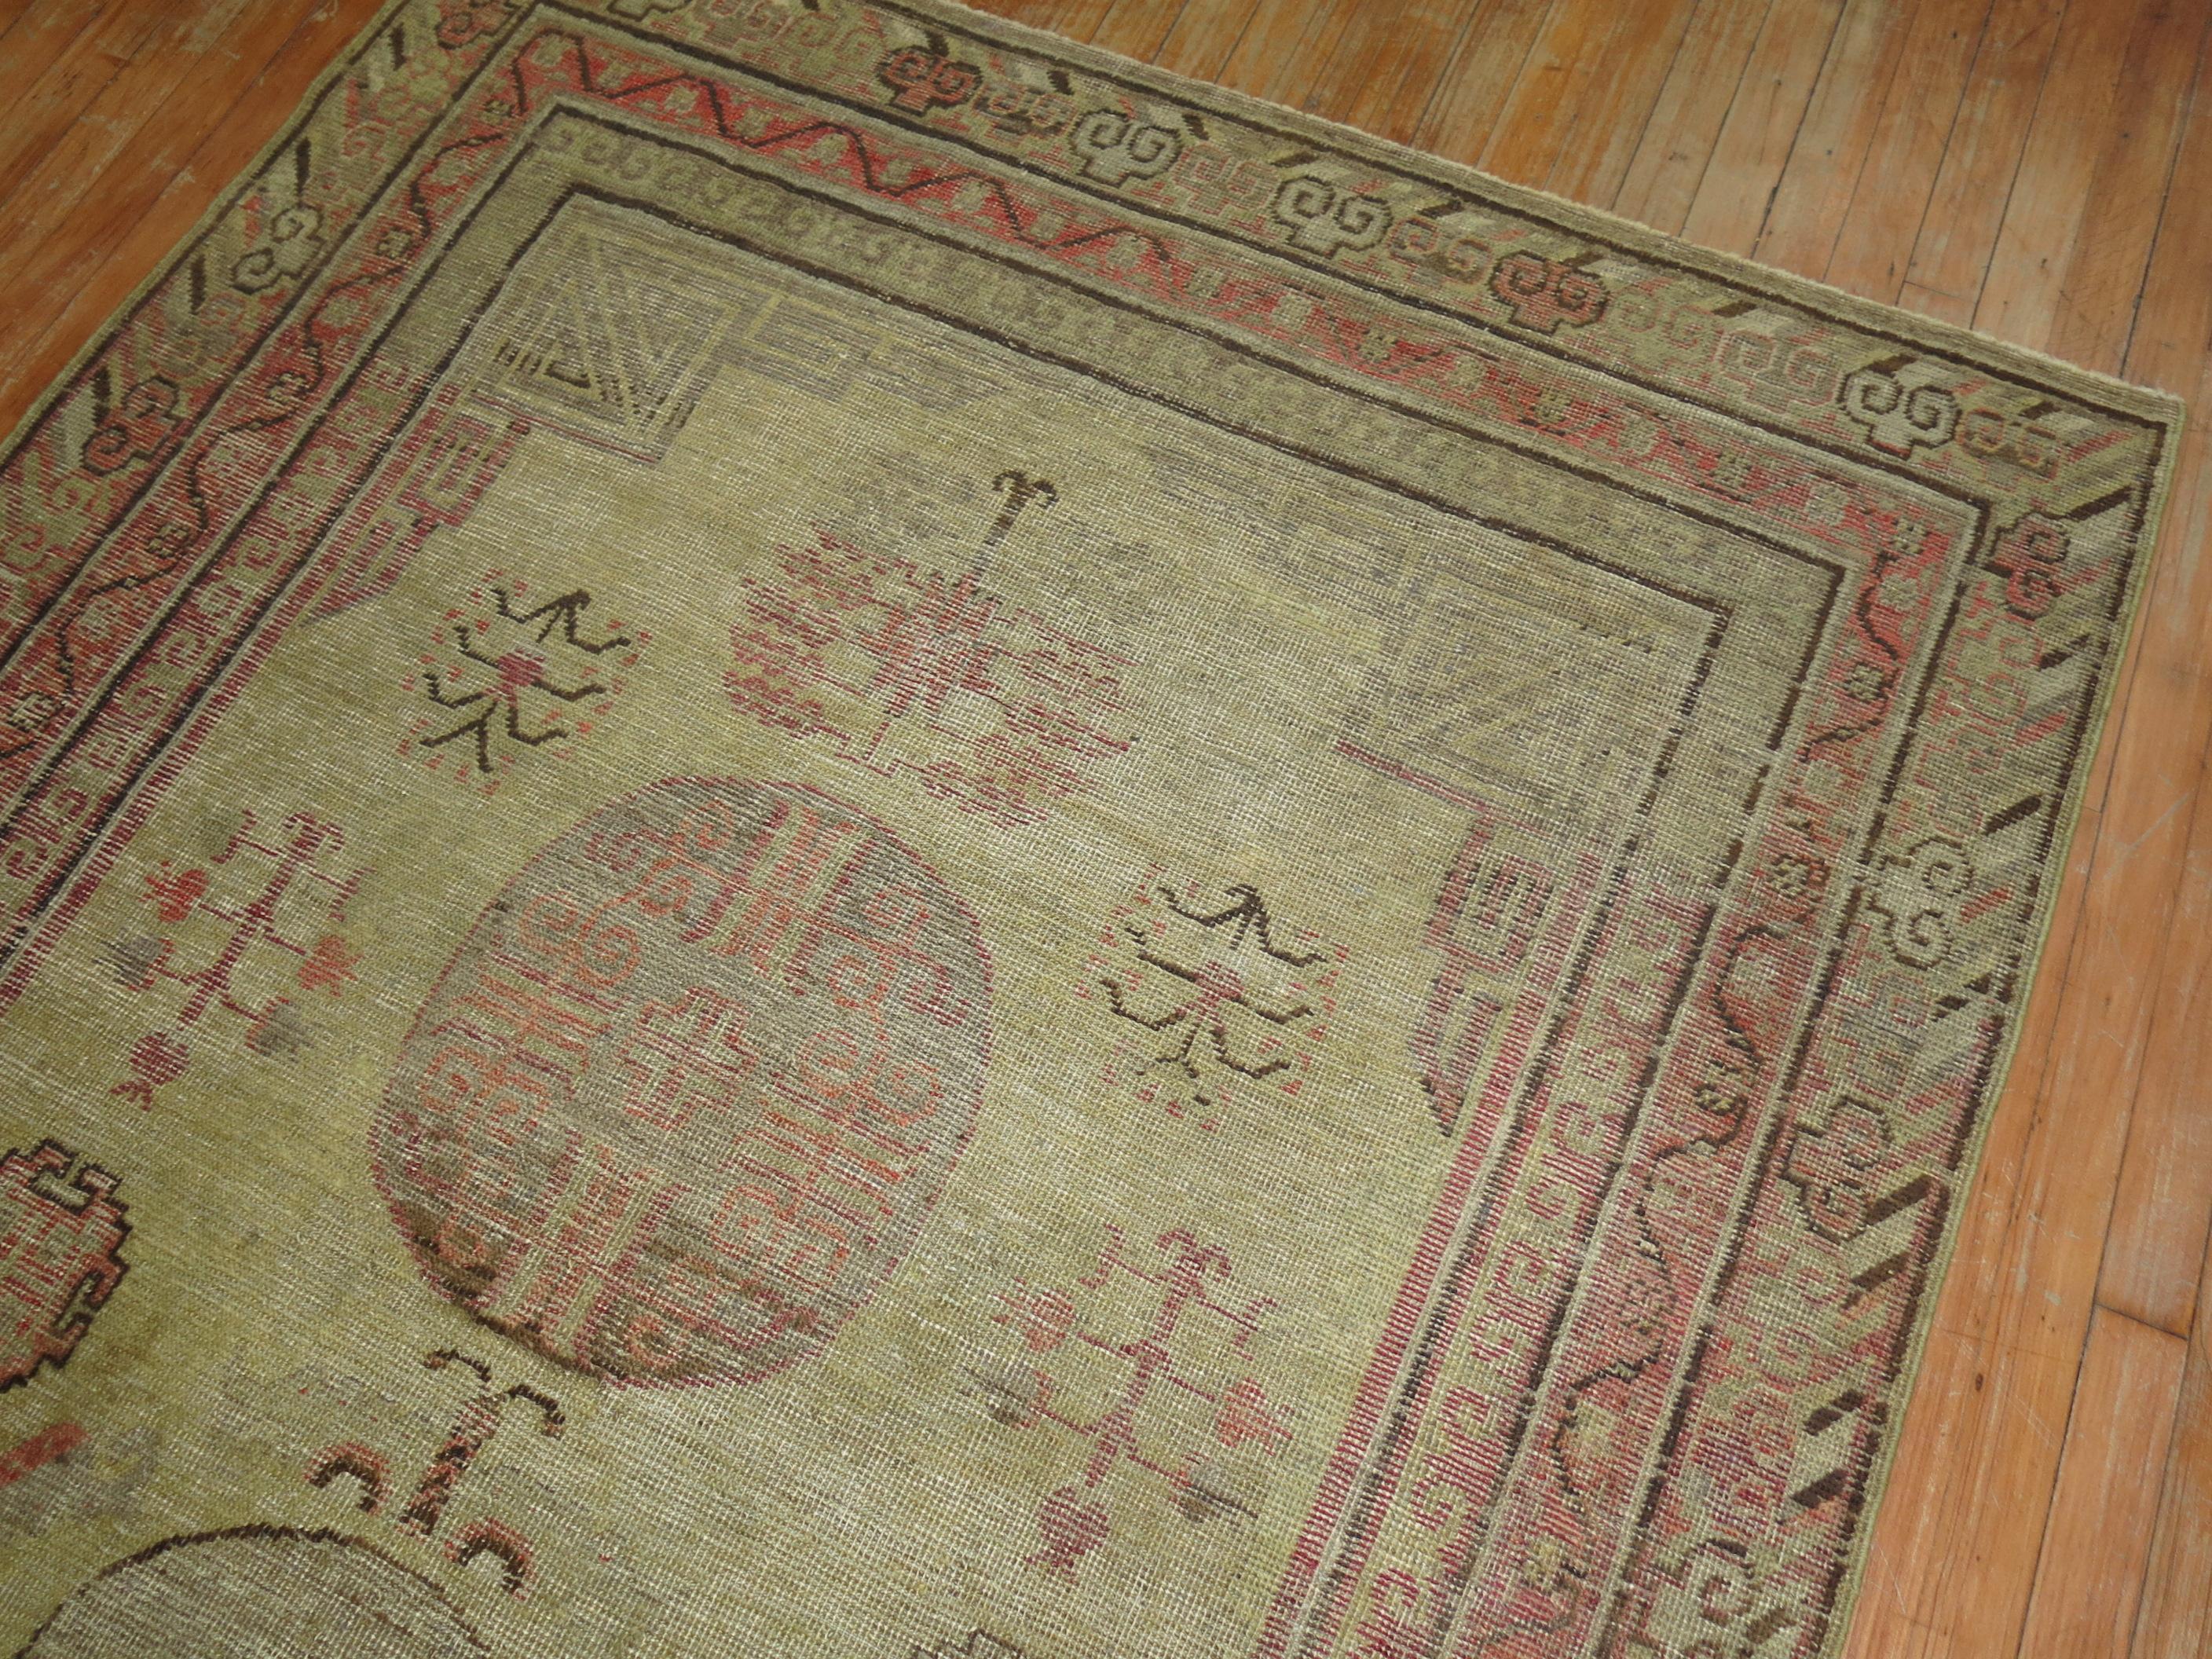 Senffeld-Gkhotan-Teppich in Akzentgröße aus dem späten 19. Jahrhundert.

Maße: 5' x 9'3''

Die Teppiche werden seit dem 17. Jahrhundert hergestellt und erreichten ihren Höhepunkt im 18. und 19. Jahrhundert. Das Markenzeichen der Khotan-Teppiche